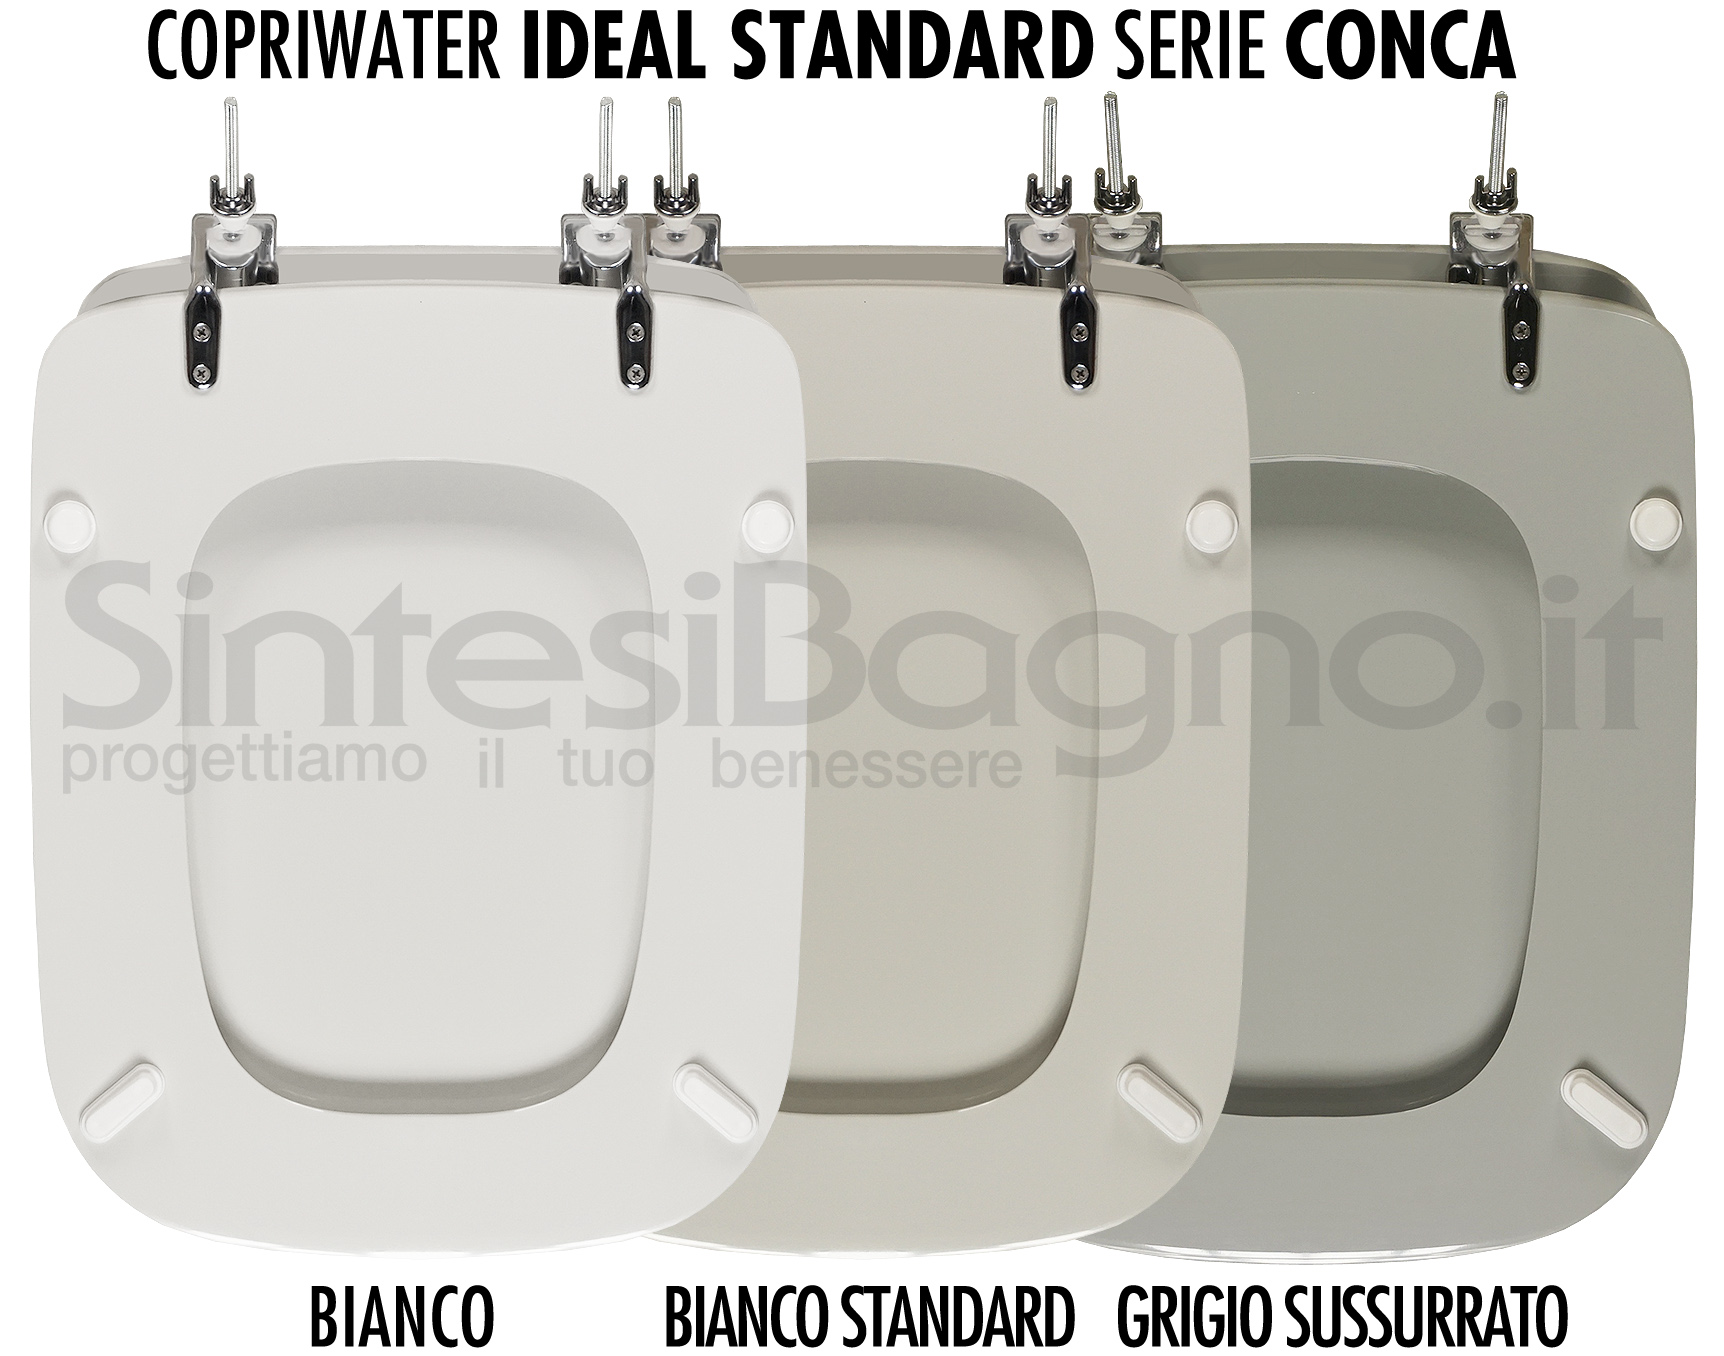 Copriwater Ideal Standard Conca bianco, bianco standard, grigio sussurrato